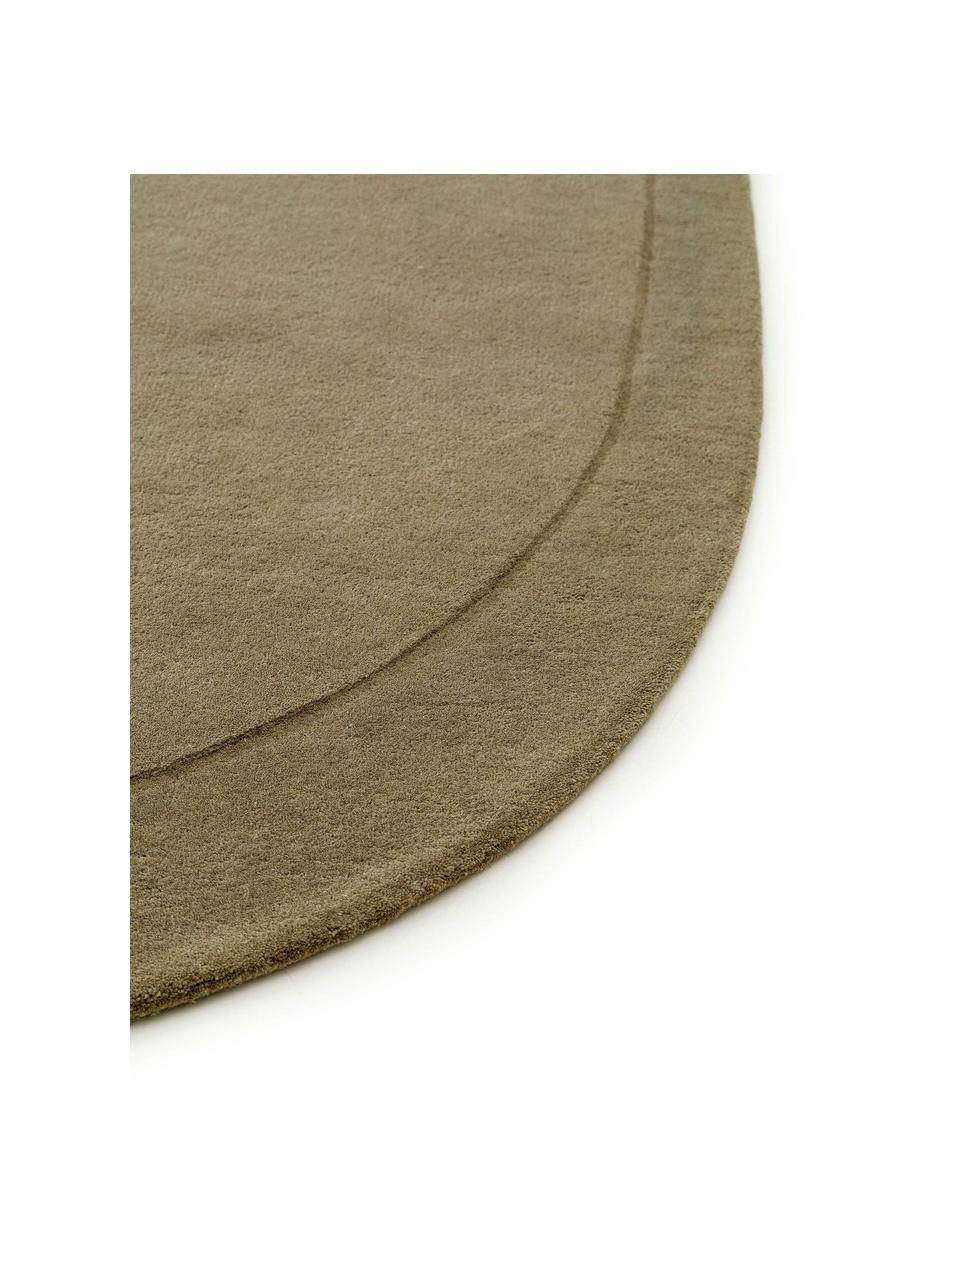 Alfombra artesanal de lana con forma orgánica Shape, 100% lana

Las alfombras de lana se pueden aflojar durante las primeras semanas de uso, la pelusa se reduce con el uso diario., Verde oliva, An 160 x L 230 cm (Tamaño M)